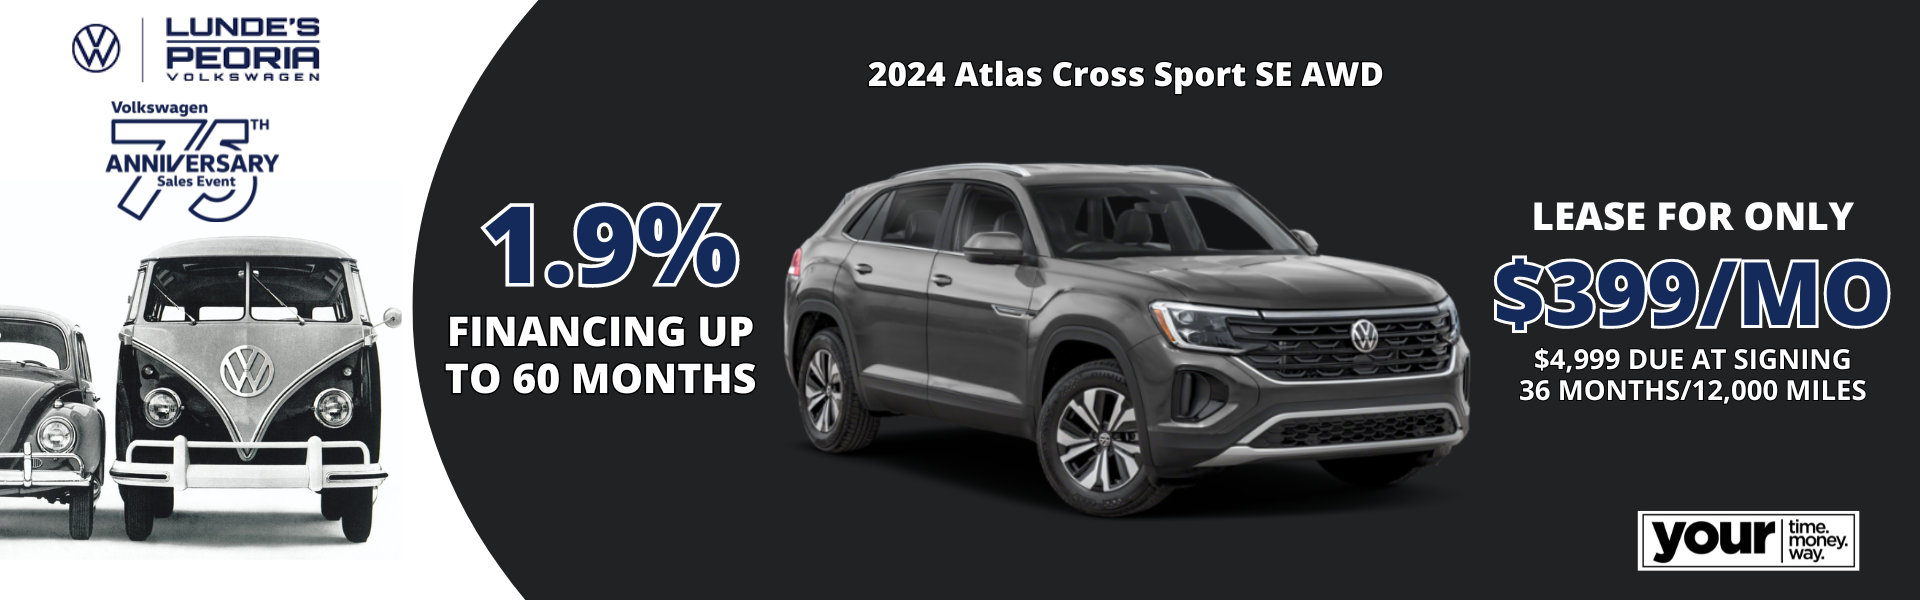 2024 Atlas Cross Sport SE AWD